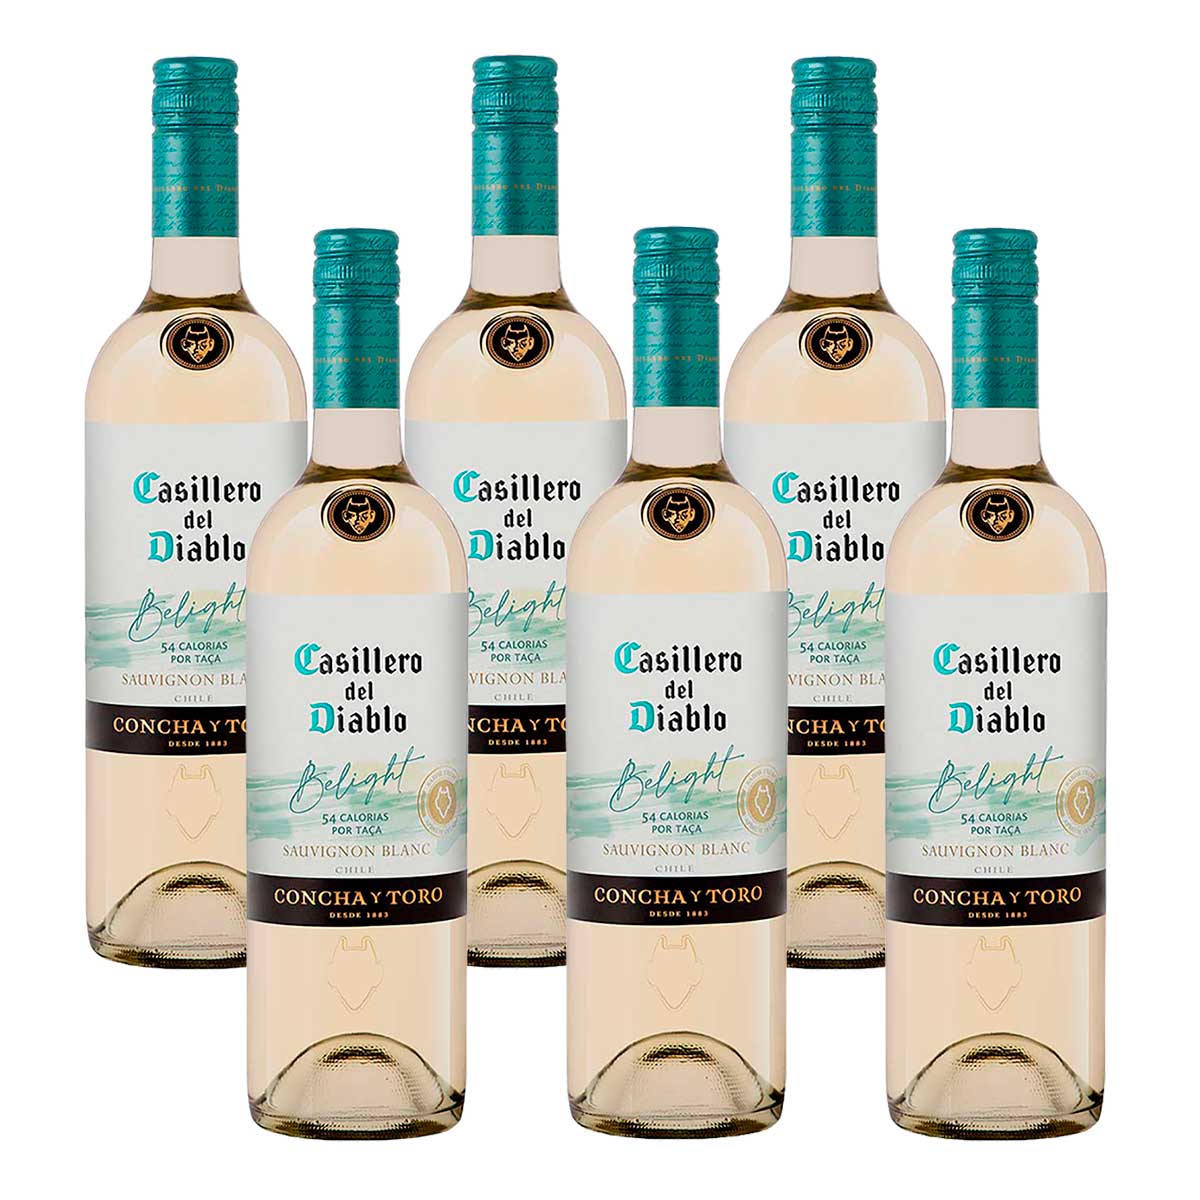 vinho-branco-meio-seco-casillero-del-diablo-belight-sauvignon-blanc-garrafa-750ml-com-6-unidades-1.jpg